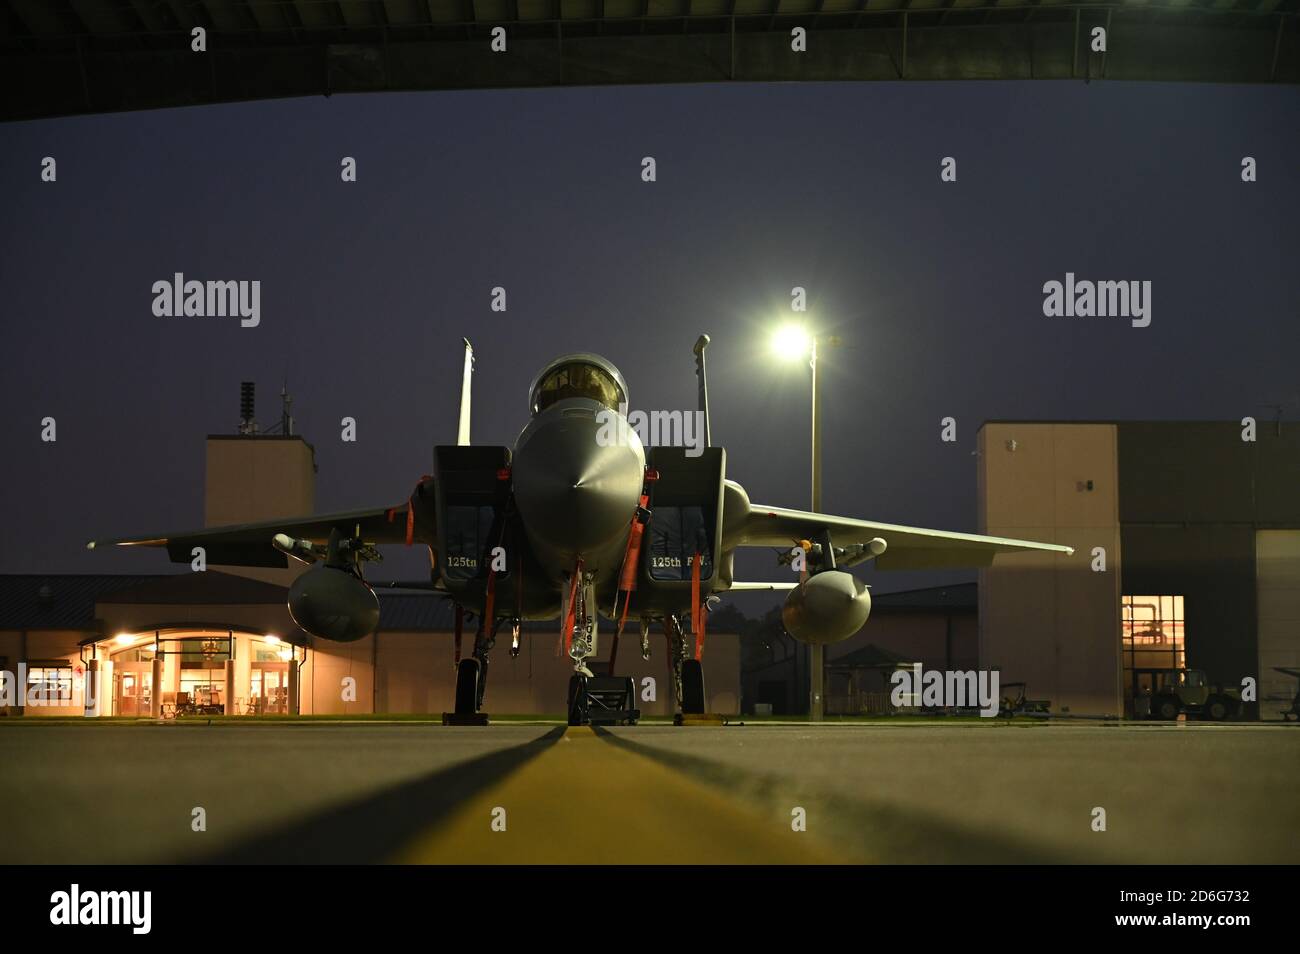 Un aereo della US Air Force F-15 è raffigurato sulla linea di volo durante un alba mattutina presso la 125th Fighter Wing, situata alla Jacksonville Air National Guard base, FL, 14 ottobre 2020. Foto Stock